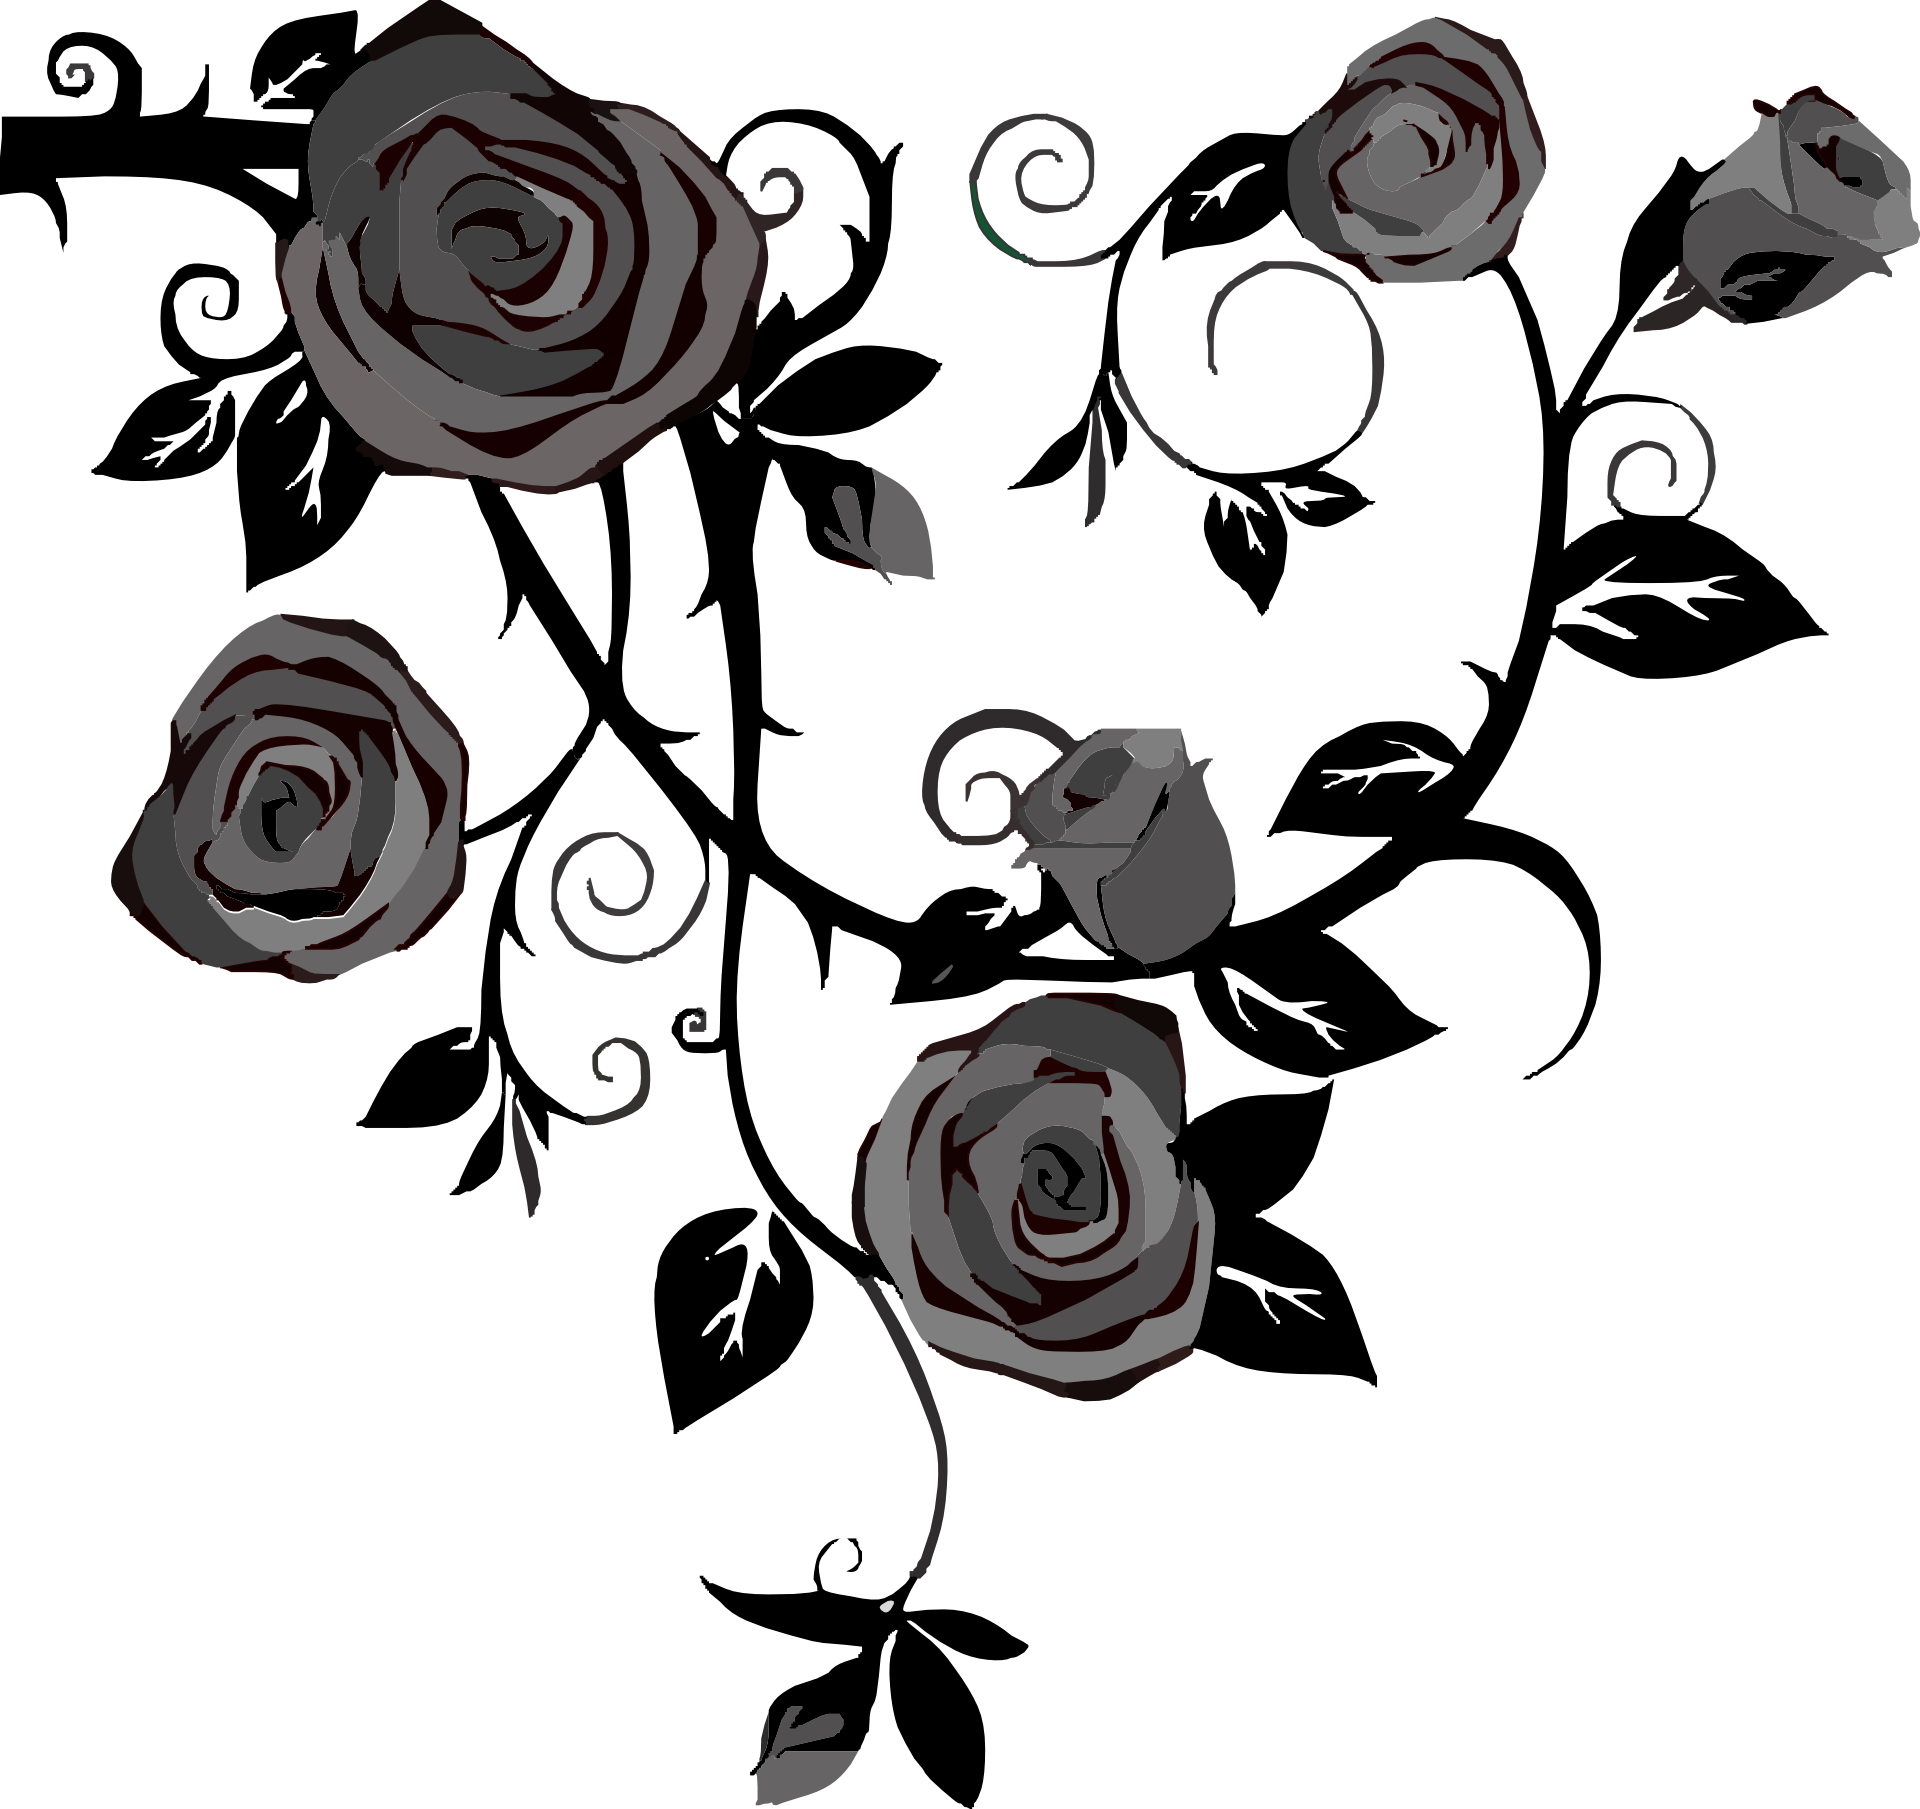 Vektor-Schwarz-Weiß-Rose-transparentes Bild